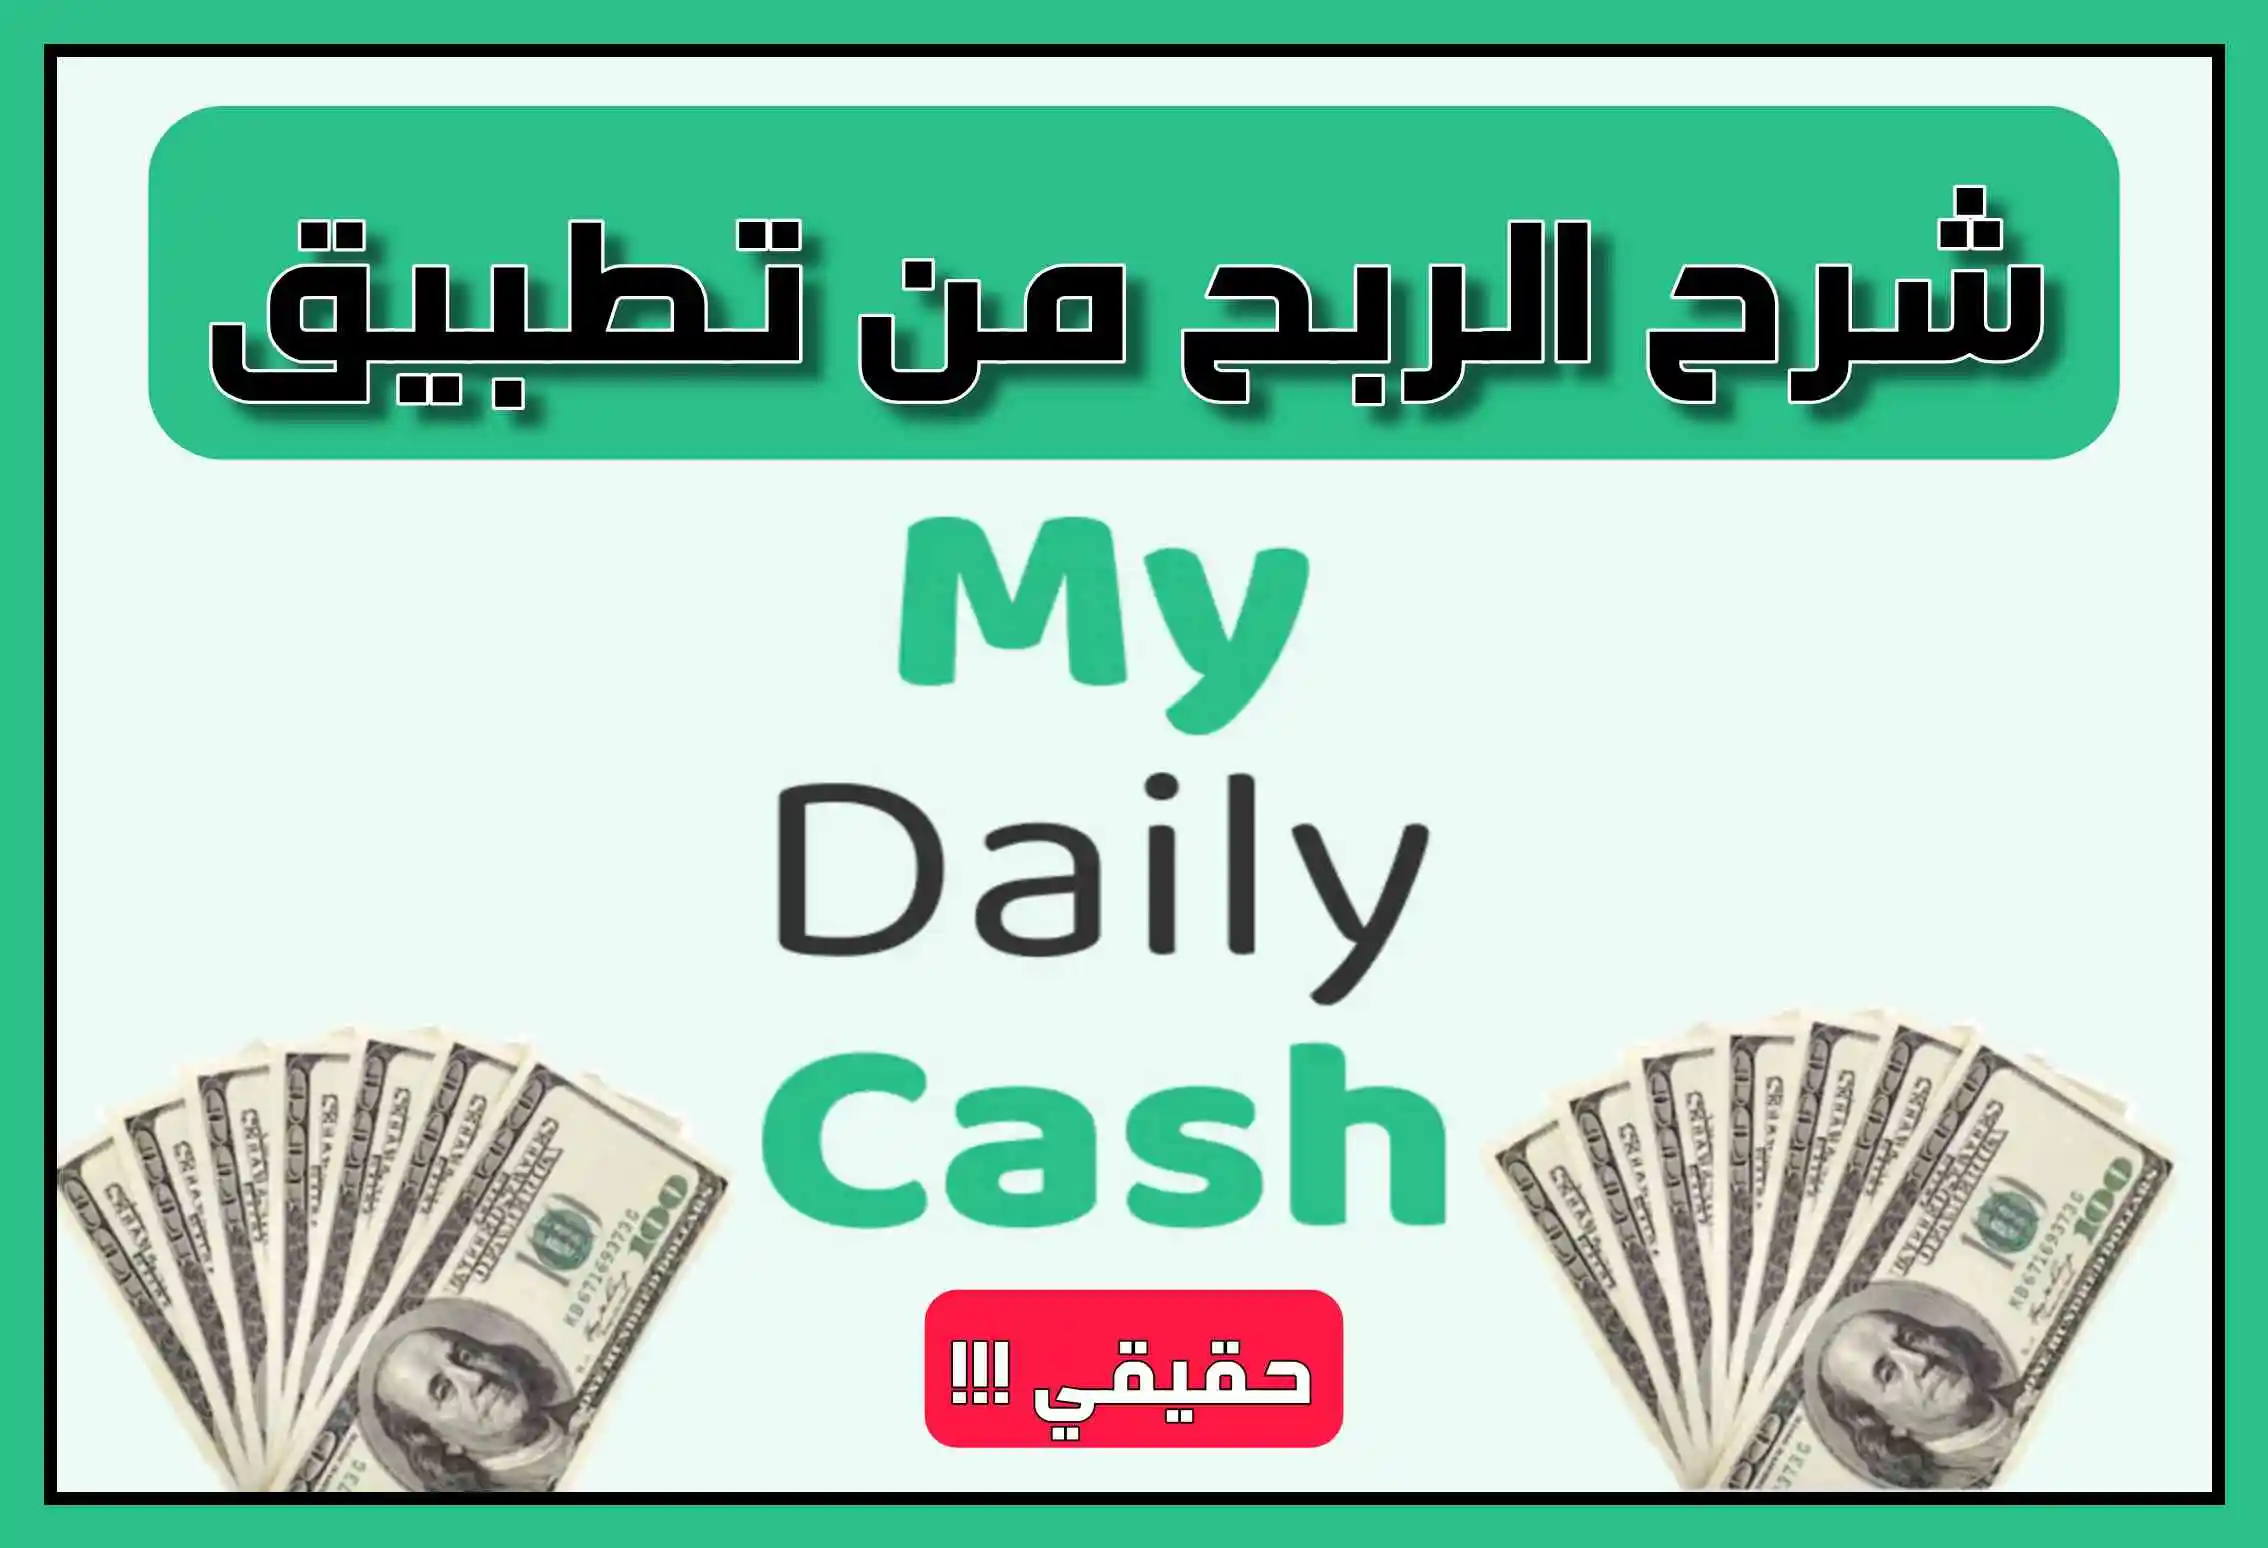 شرح تطبيق my daily cash